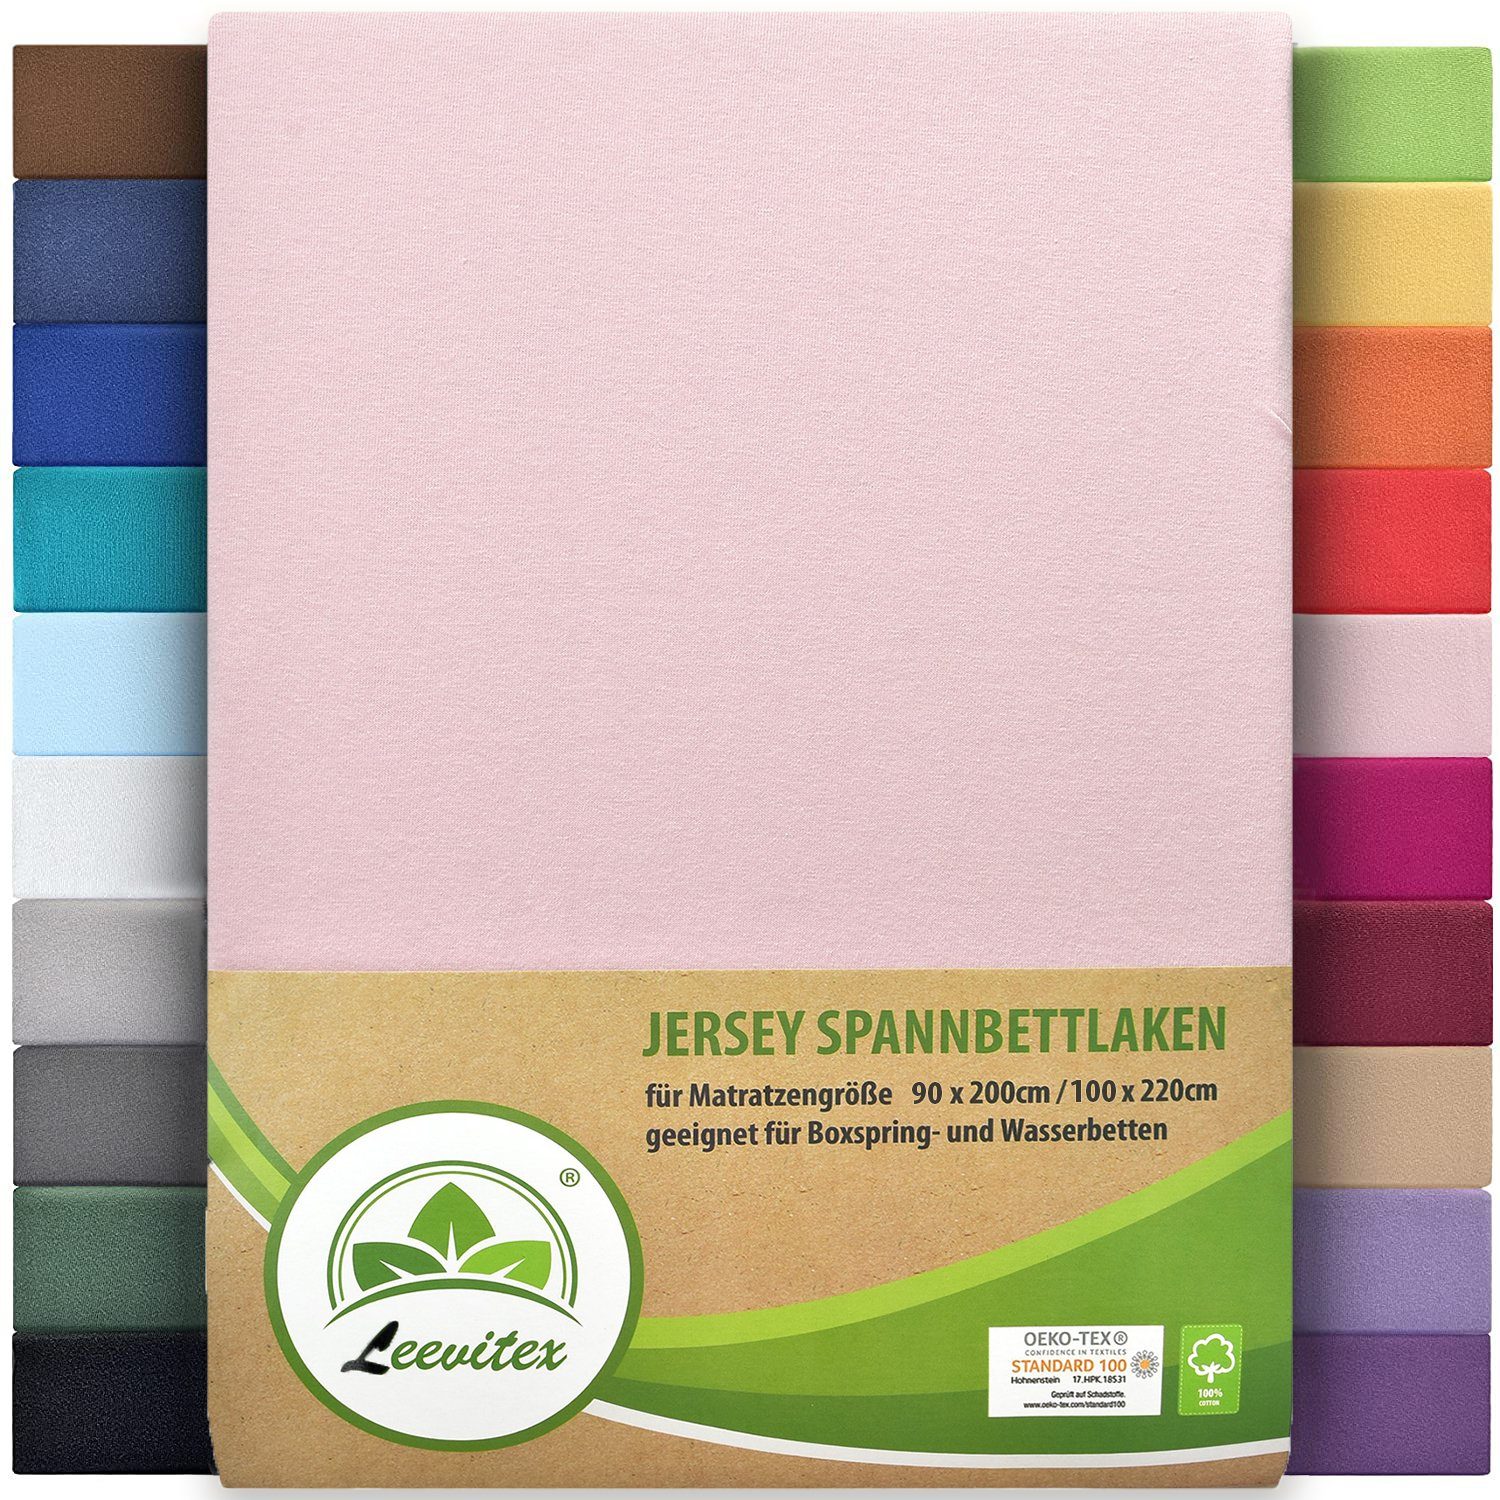 Spannbettlaken Premium 170, leevitex®, Gummizug: rundum, schwer und dick, 100% Jersey-Baumwolle, auch Boxspringbett geeignet Rosa / Rose